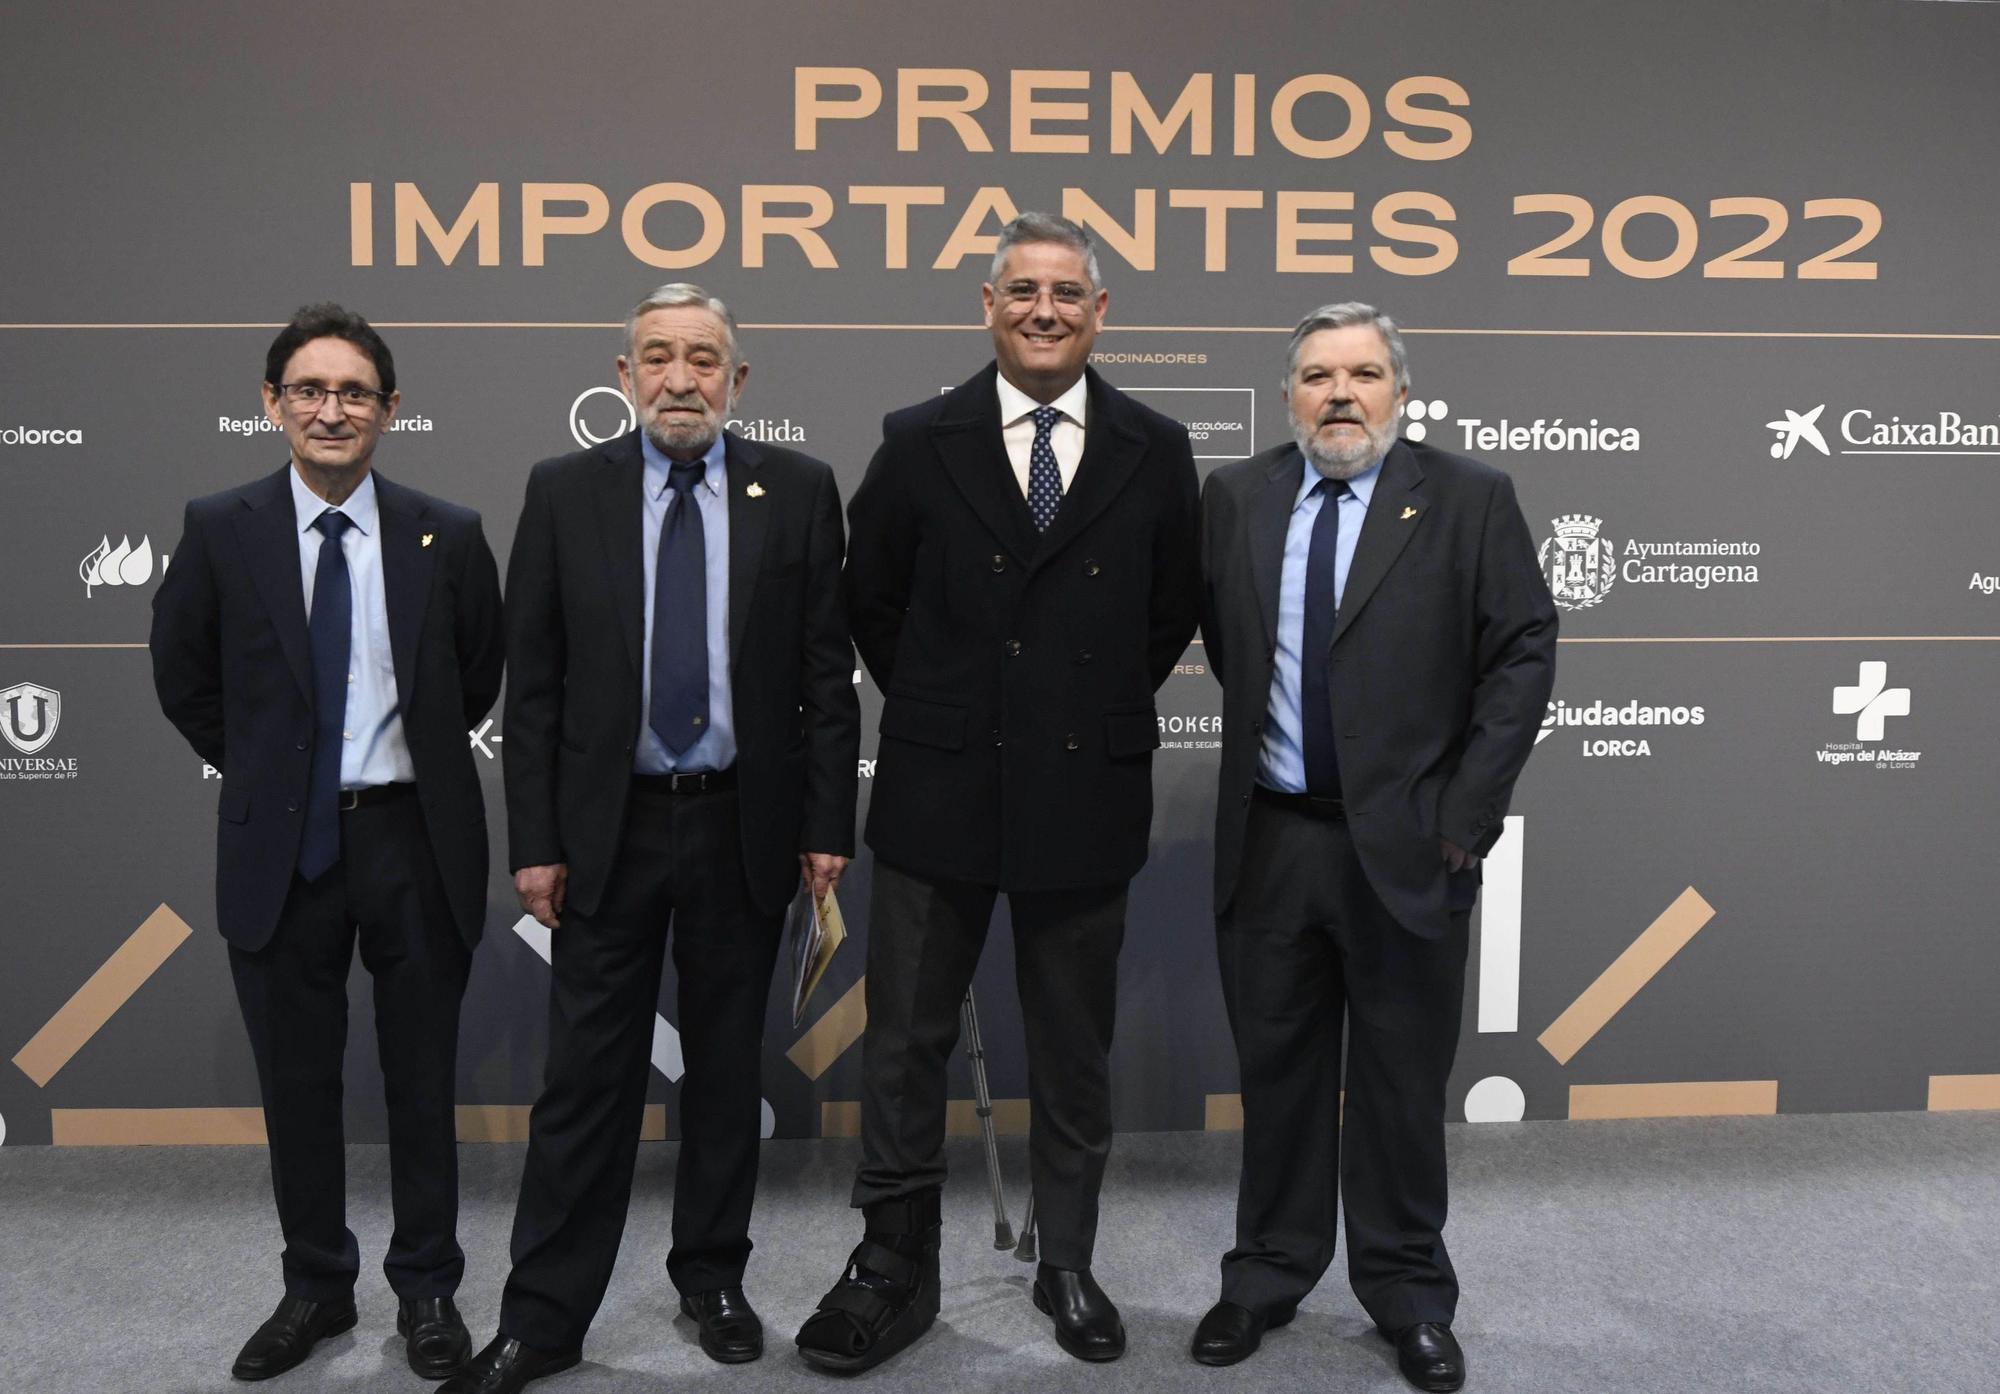 Gala de entrega de los Premios Importantes 2022 en Lorca